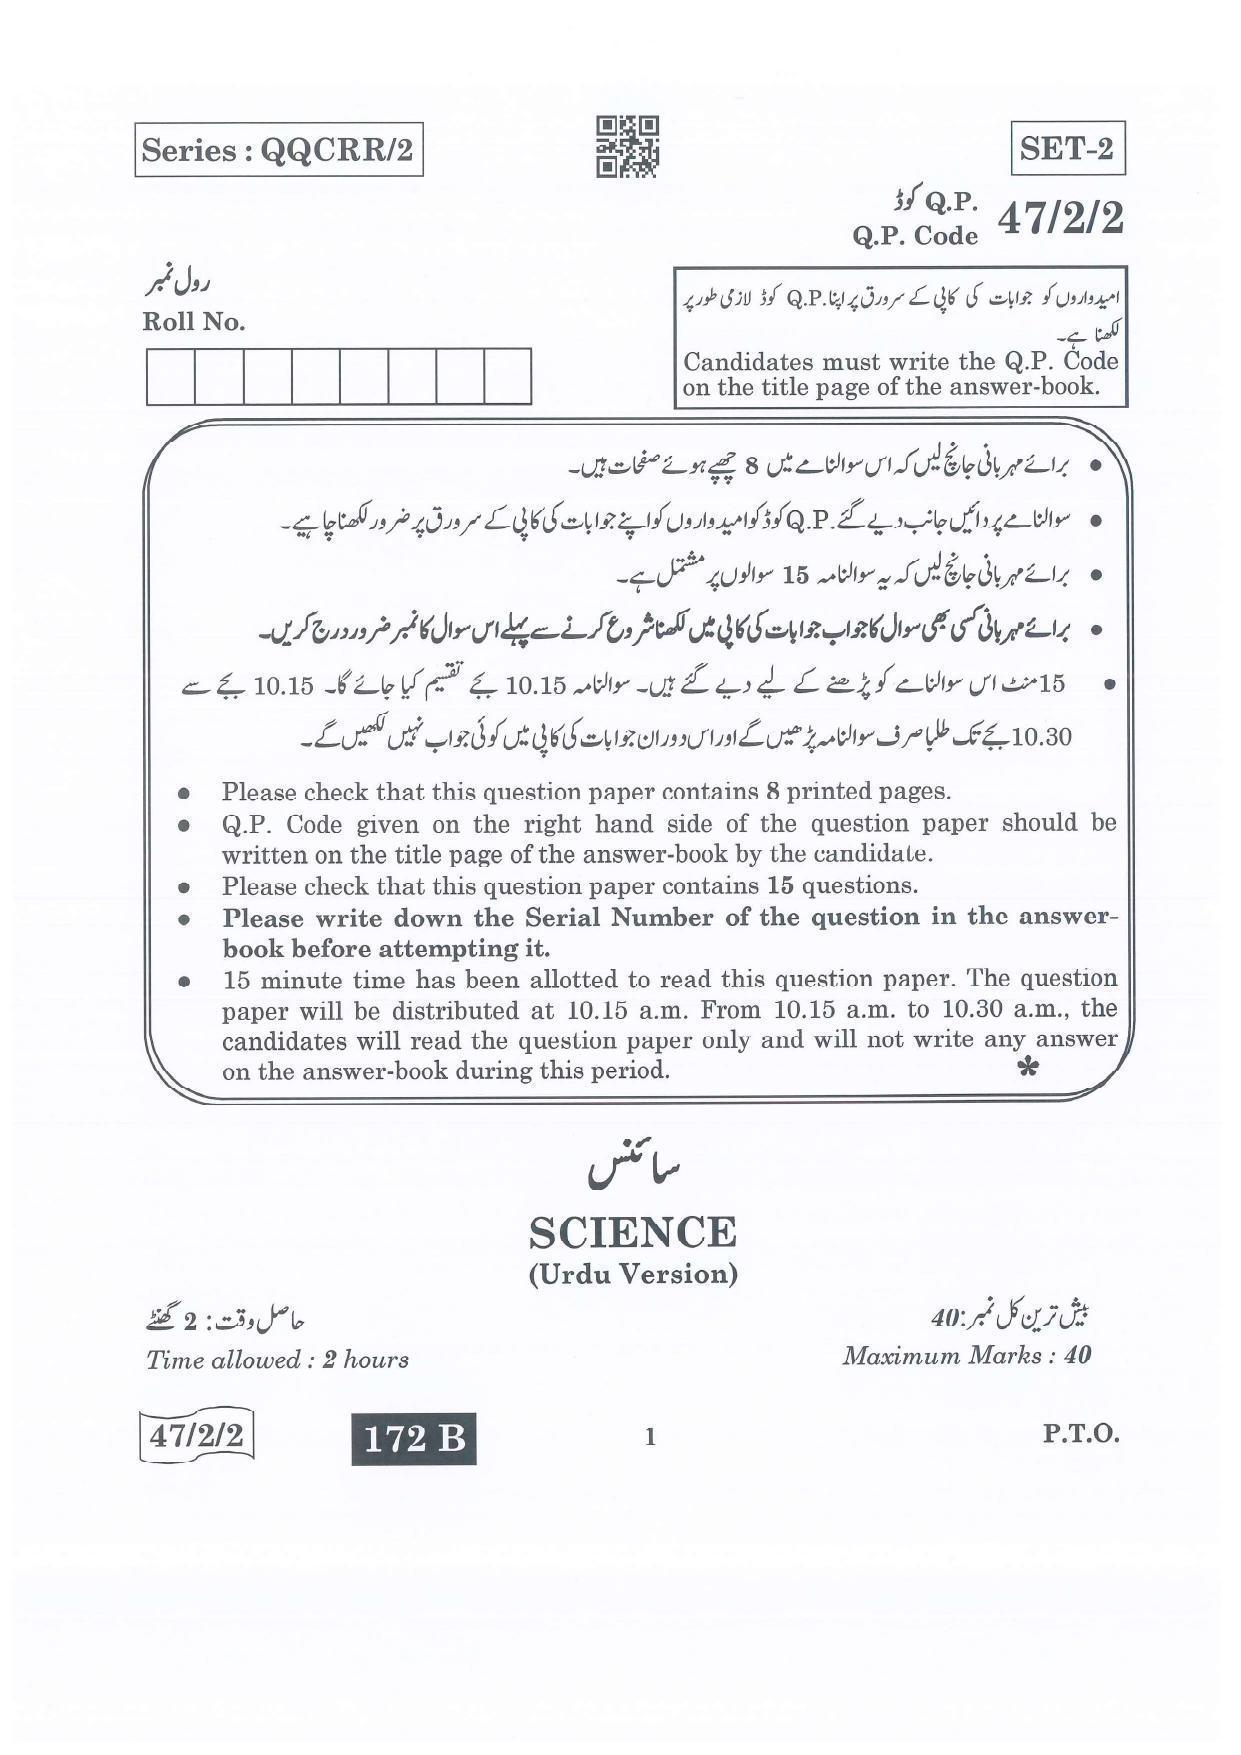 CBSE Class 10 47-2-2 Science Urdu Version.pdf 1 2022 Question Paper - Page 1